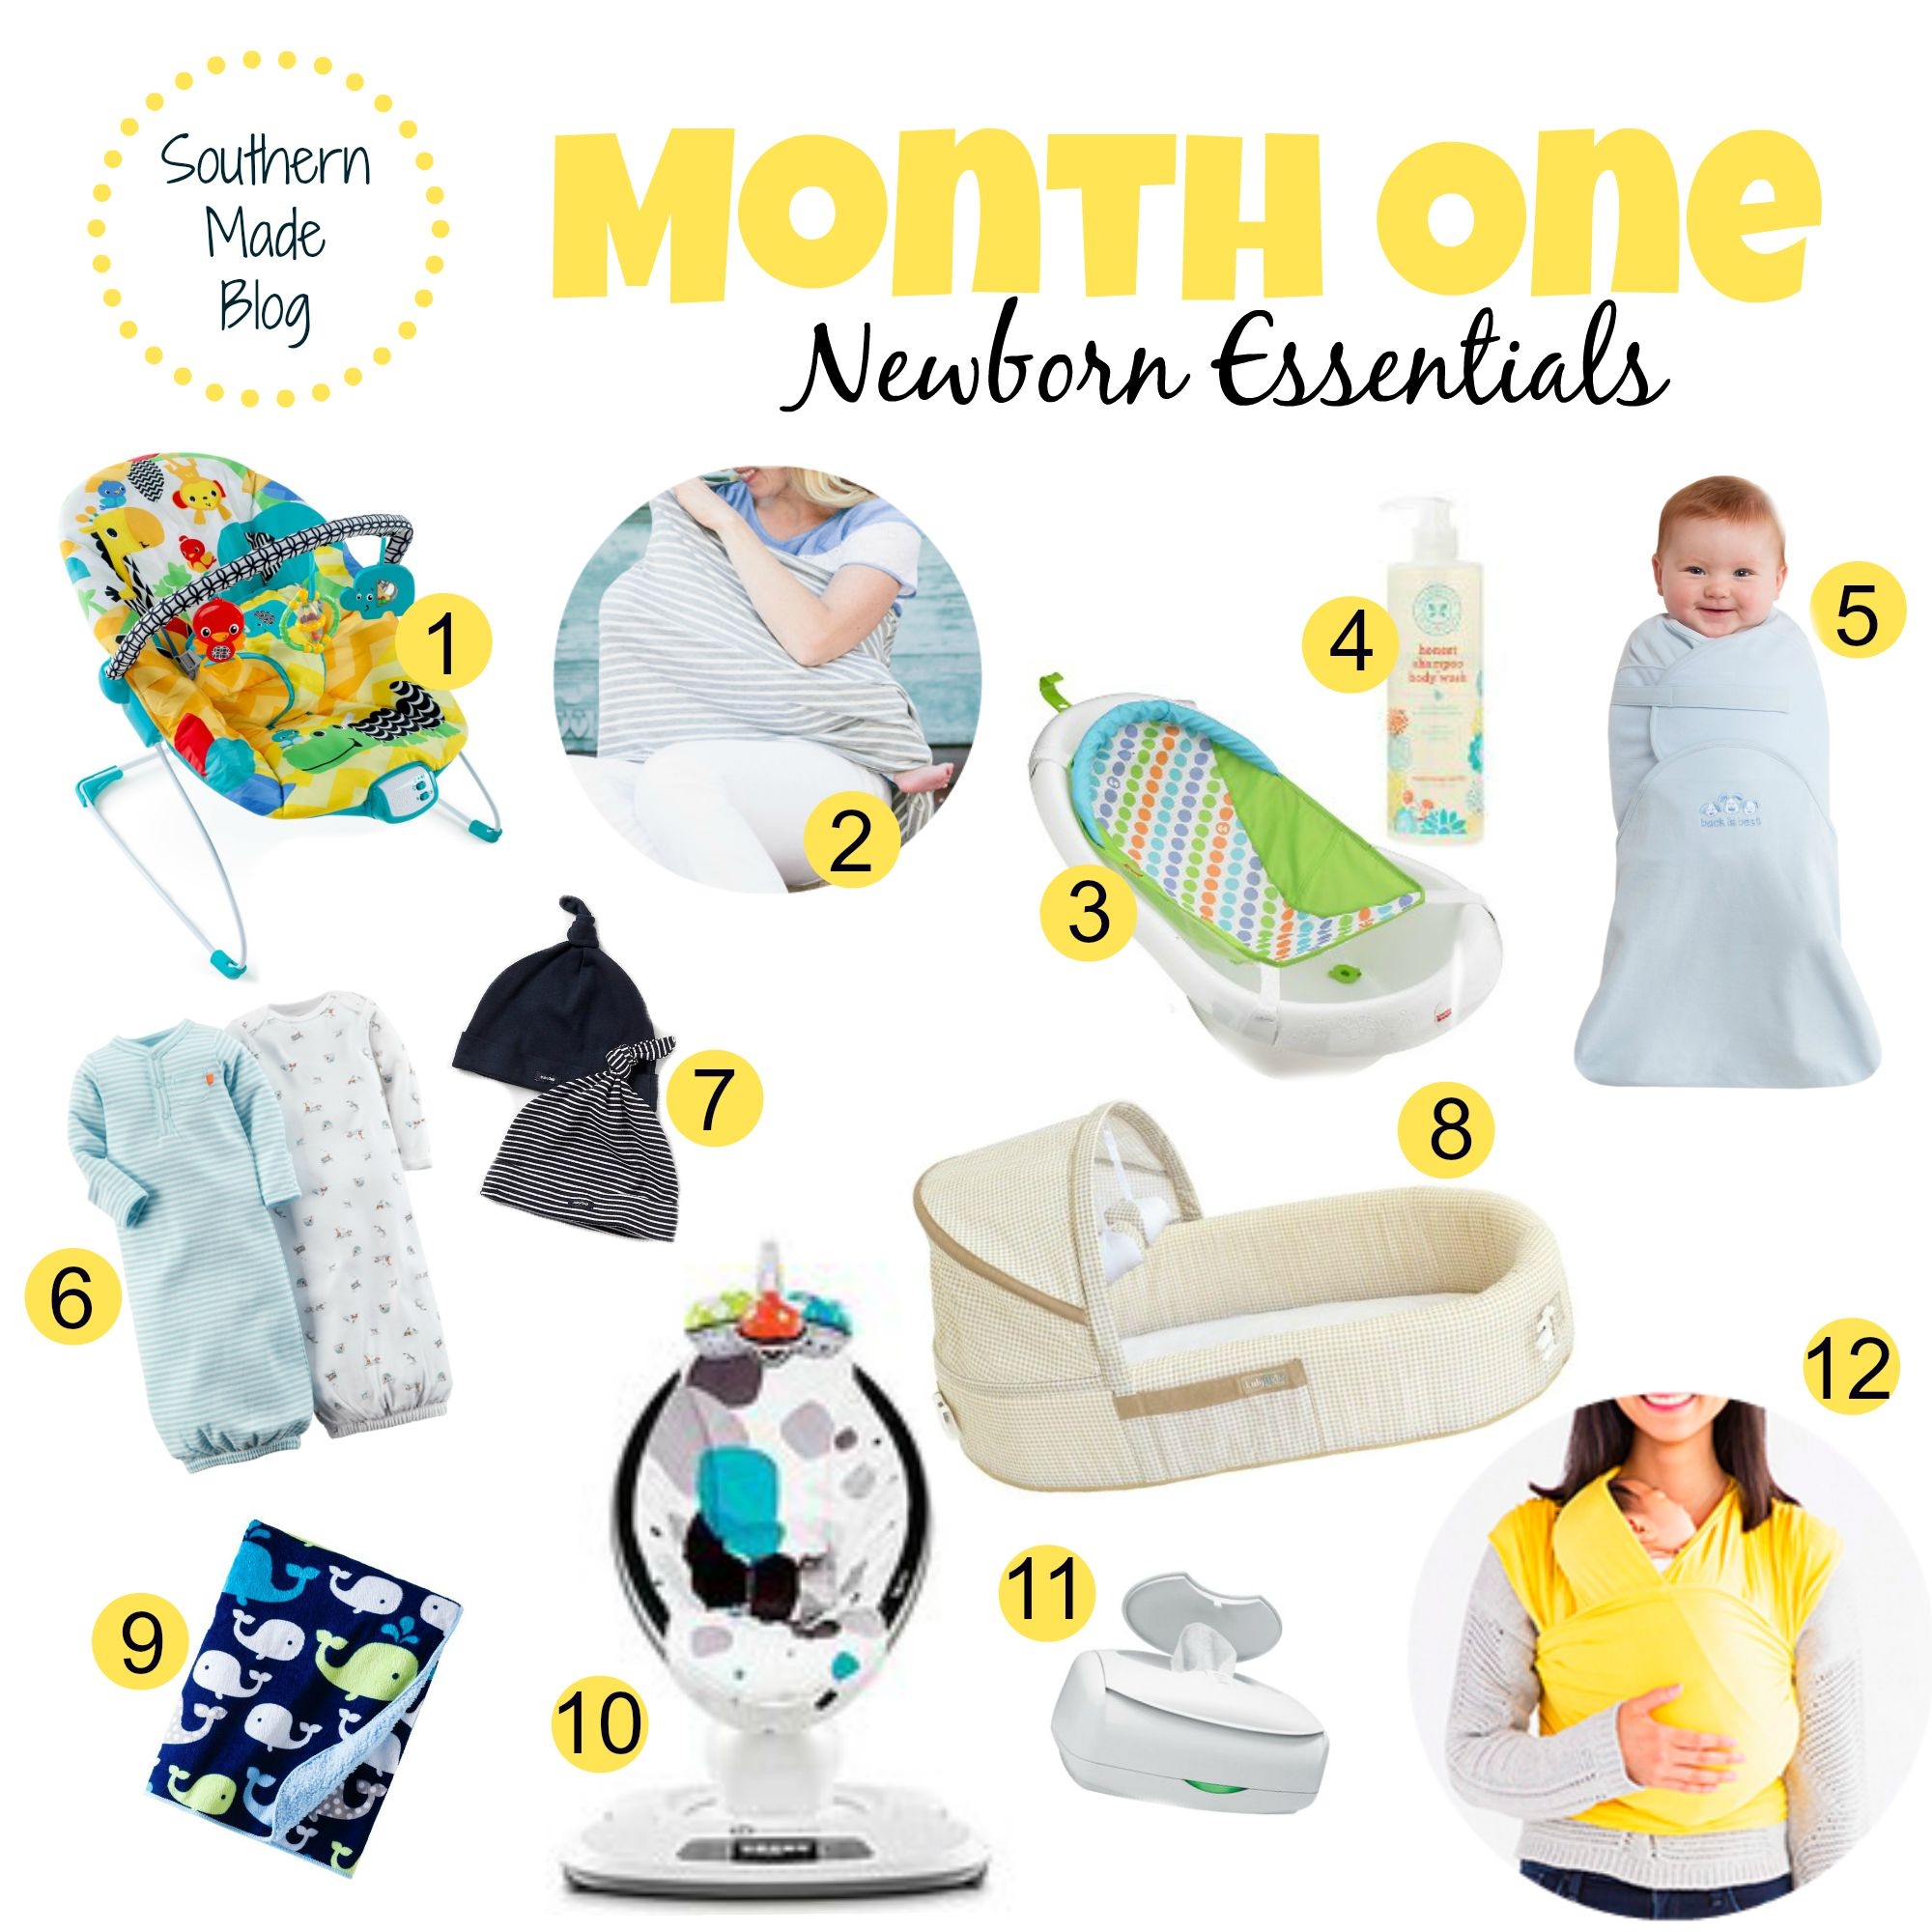 Month One Newborn Essentials + Giveaway